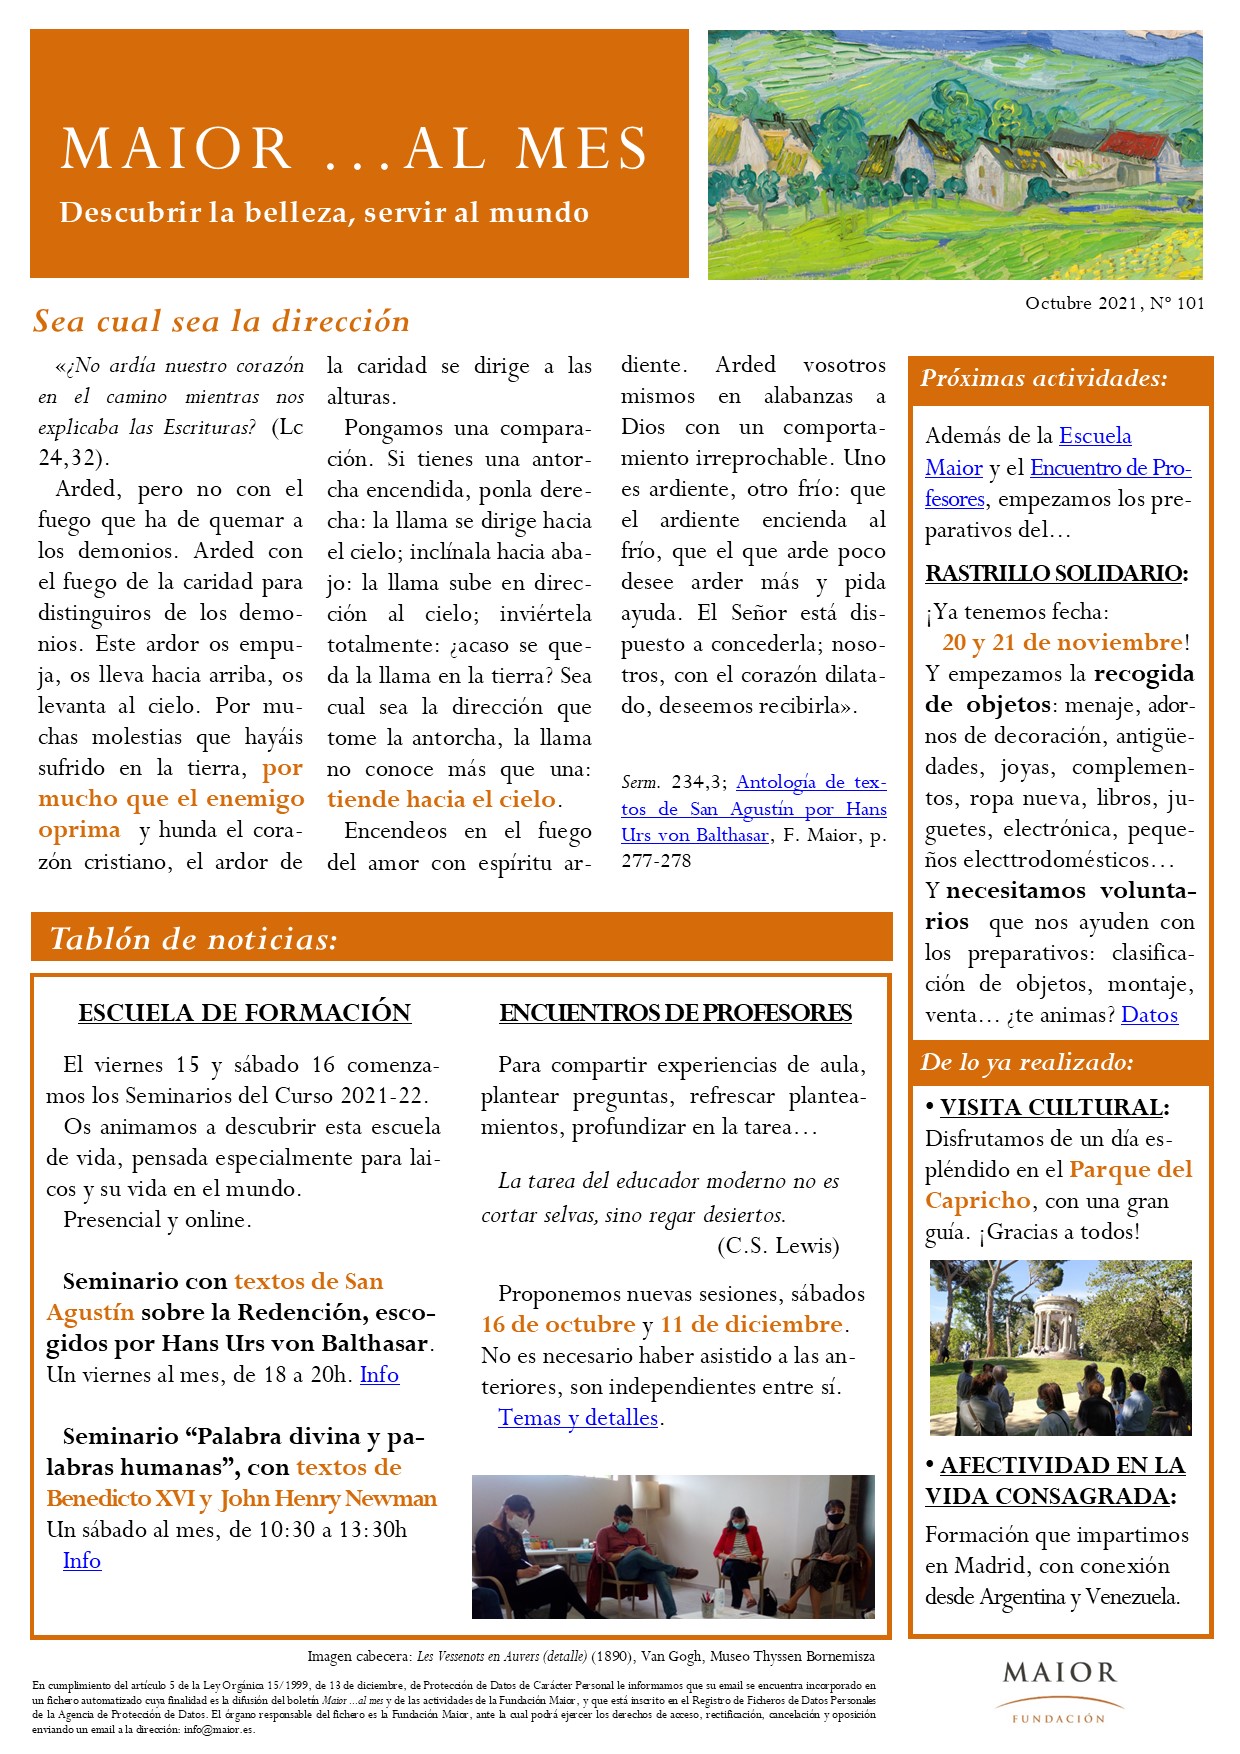 Boletín mensual de noticias y actividades de la Fundación Maior. Edición de octubre 2021